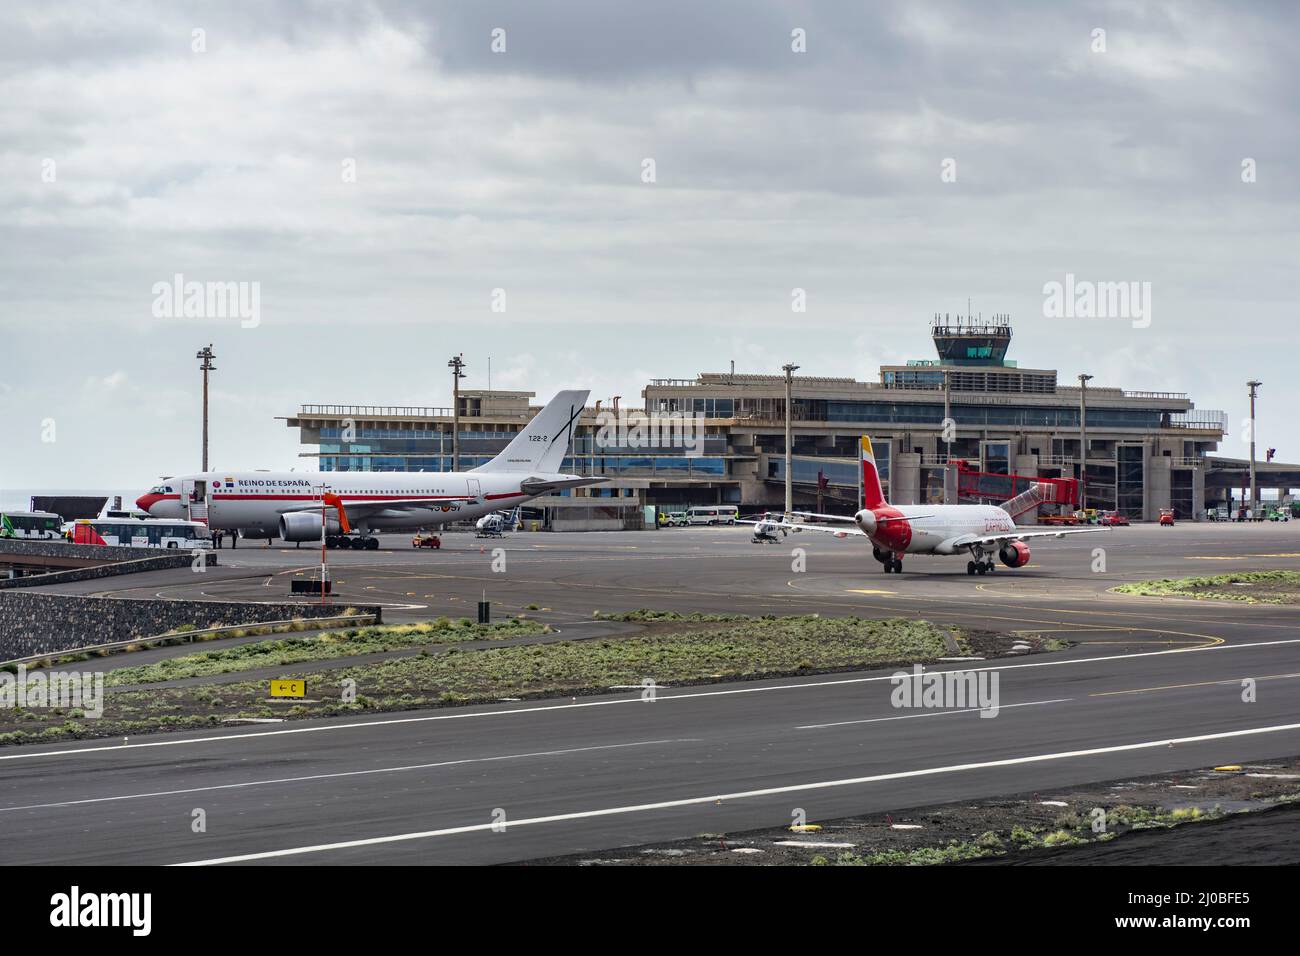 Aeropuerto de La Palma (SPC), 12. März 2022: Terminal und Start- und Landebahn sowie Vorfeld mit einem Flugzeug der spanischen Regierung (Airbus A310-304, Registrierung Stockfoto